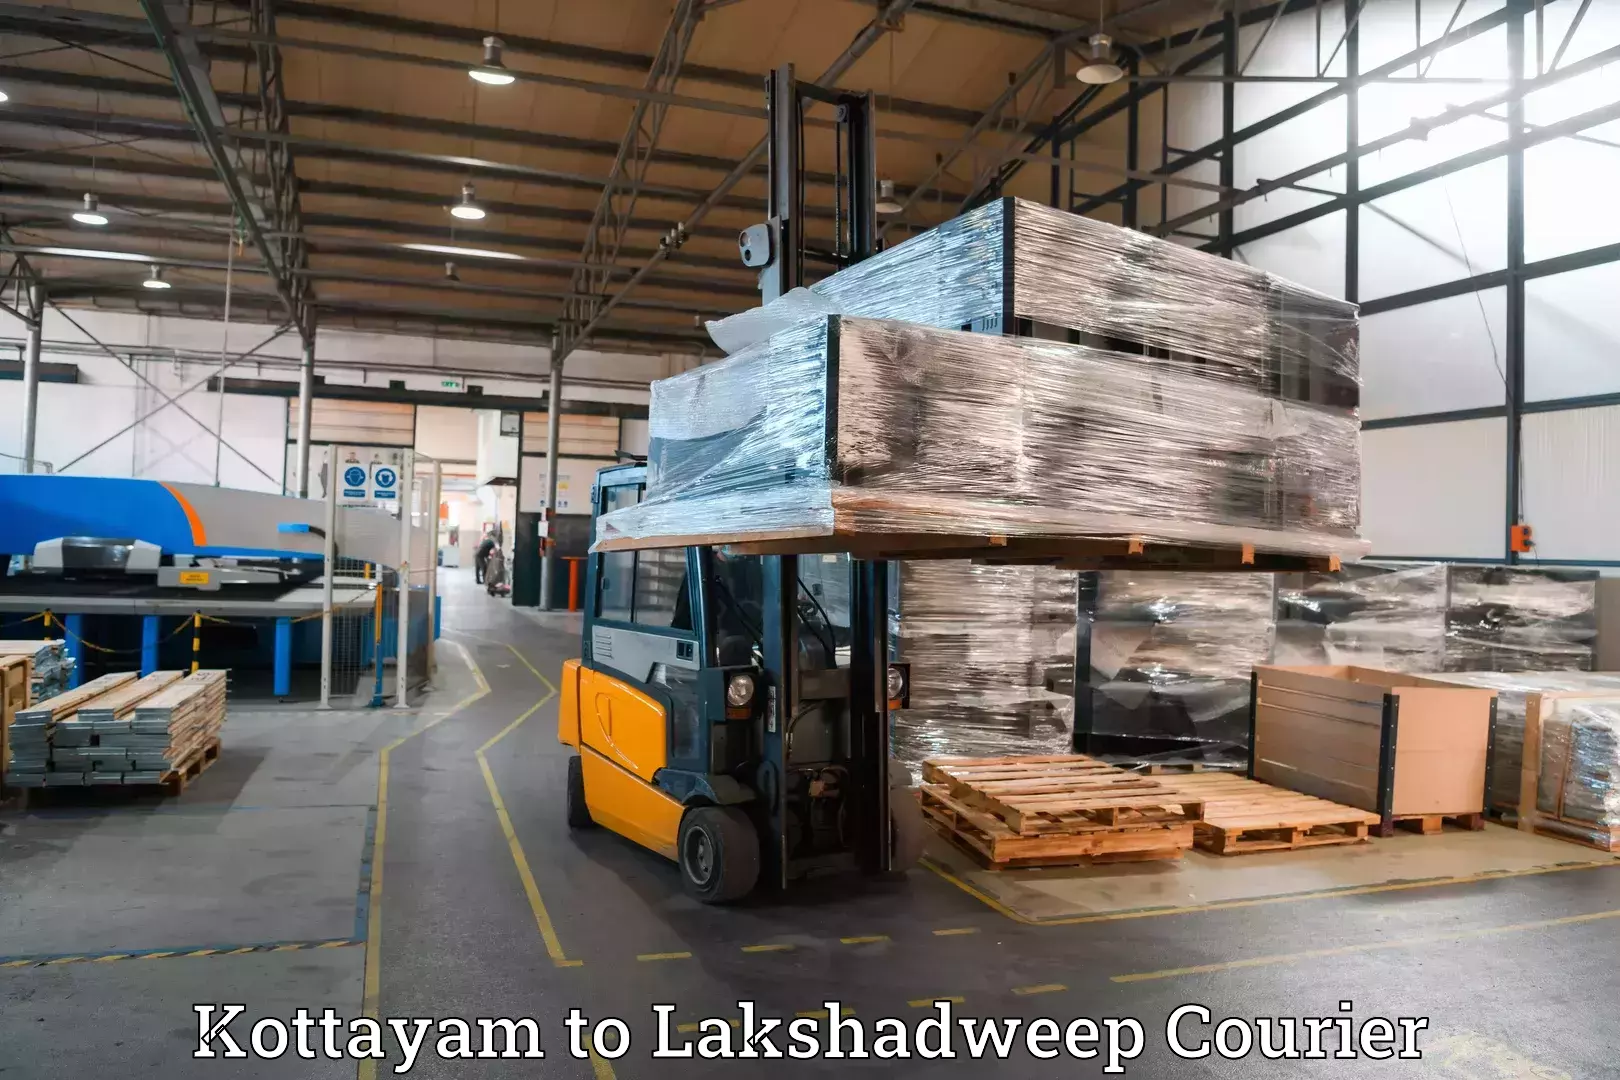 Baggage shipping service Kottayam to Lakshadweep